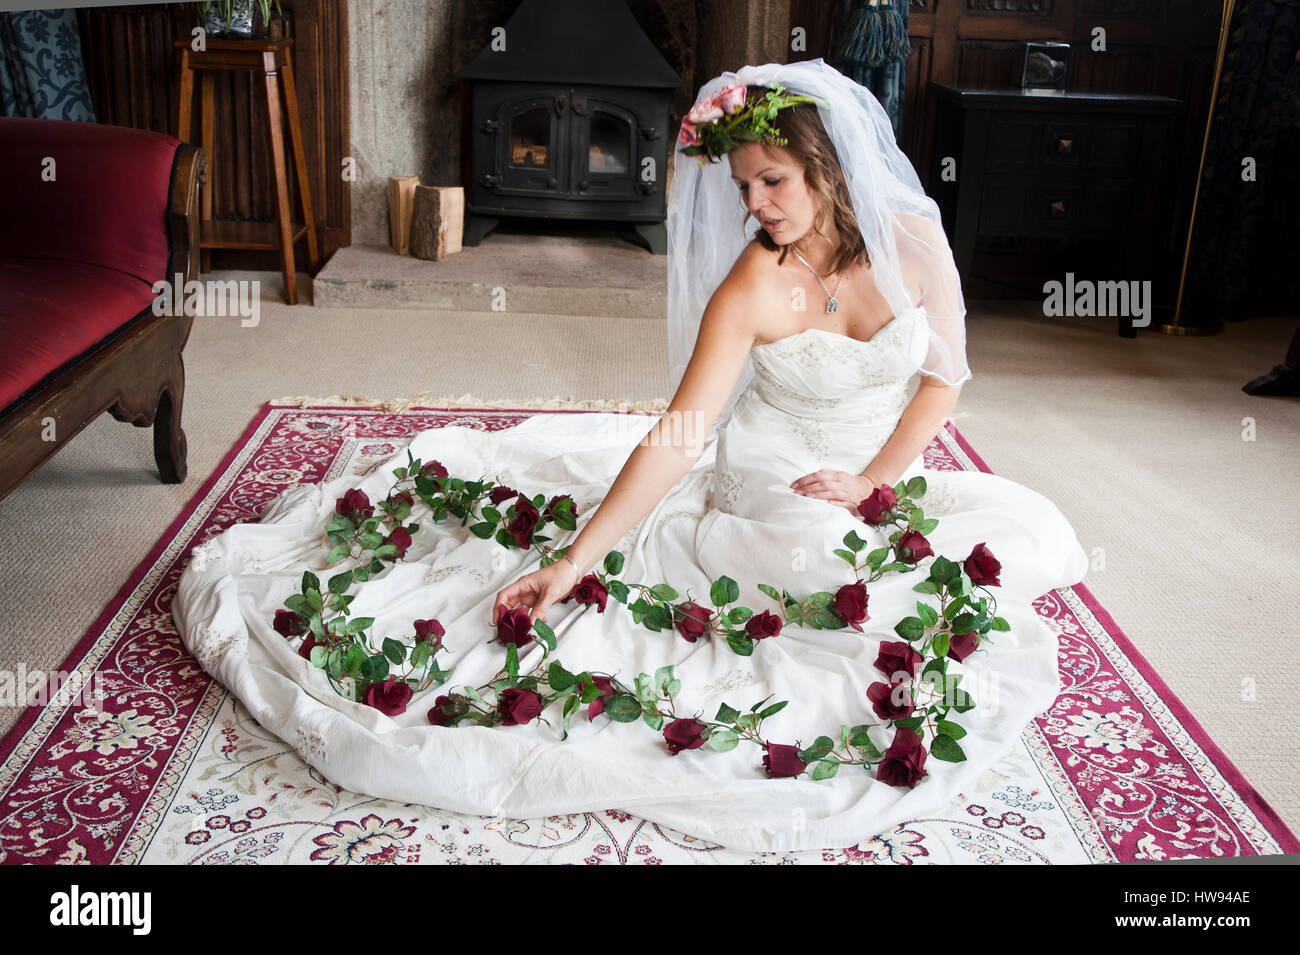 Frau trägt ein Brautkleid mit Rosen auf einem Teppich knieend über das Skit  ihres Kleides gelegt Stockfotografie - Alamy